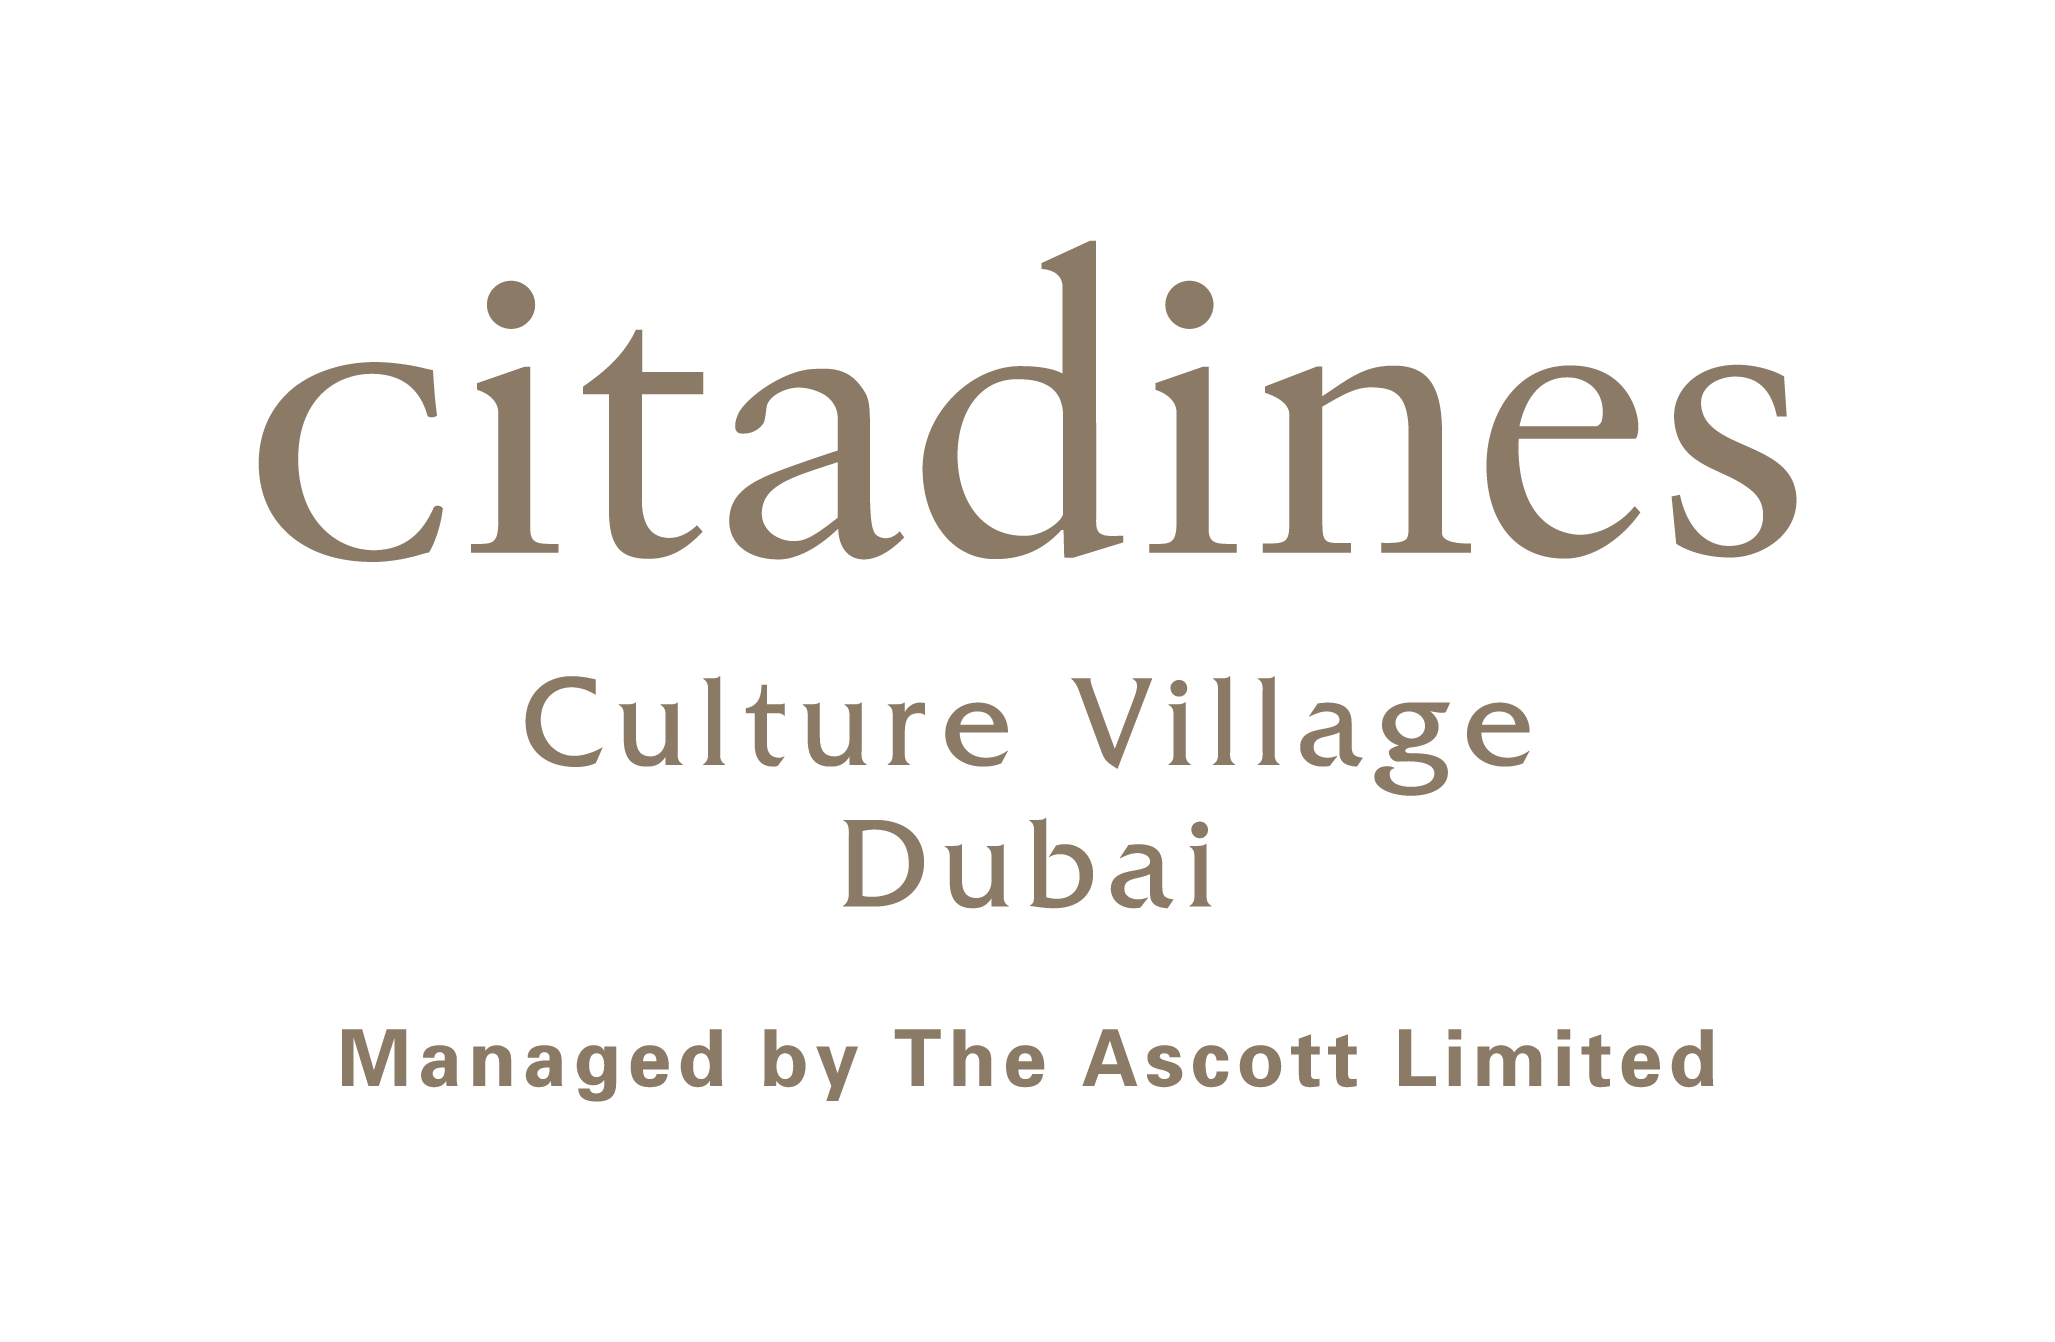 Культурная деревня Citadines в Дубае